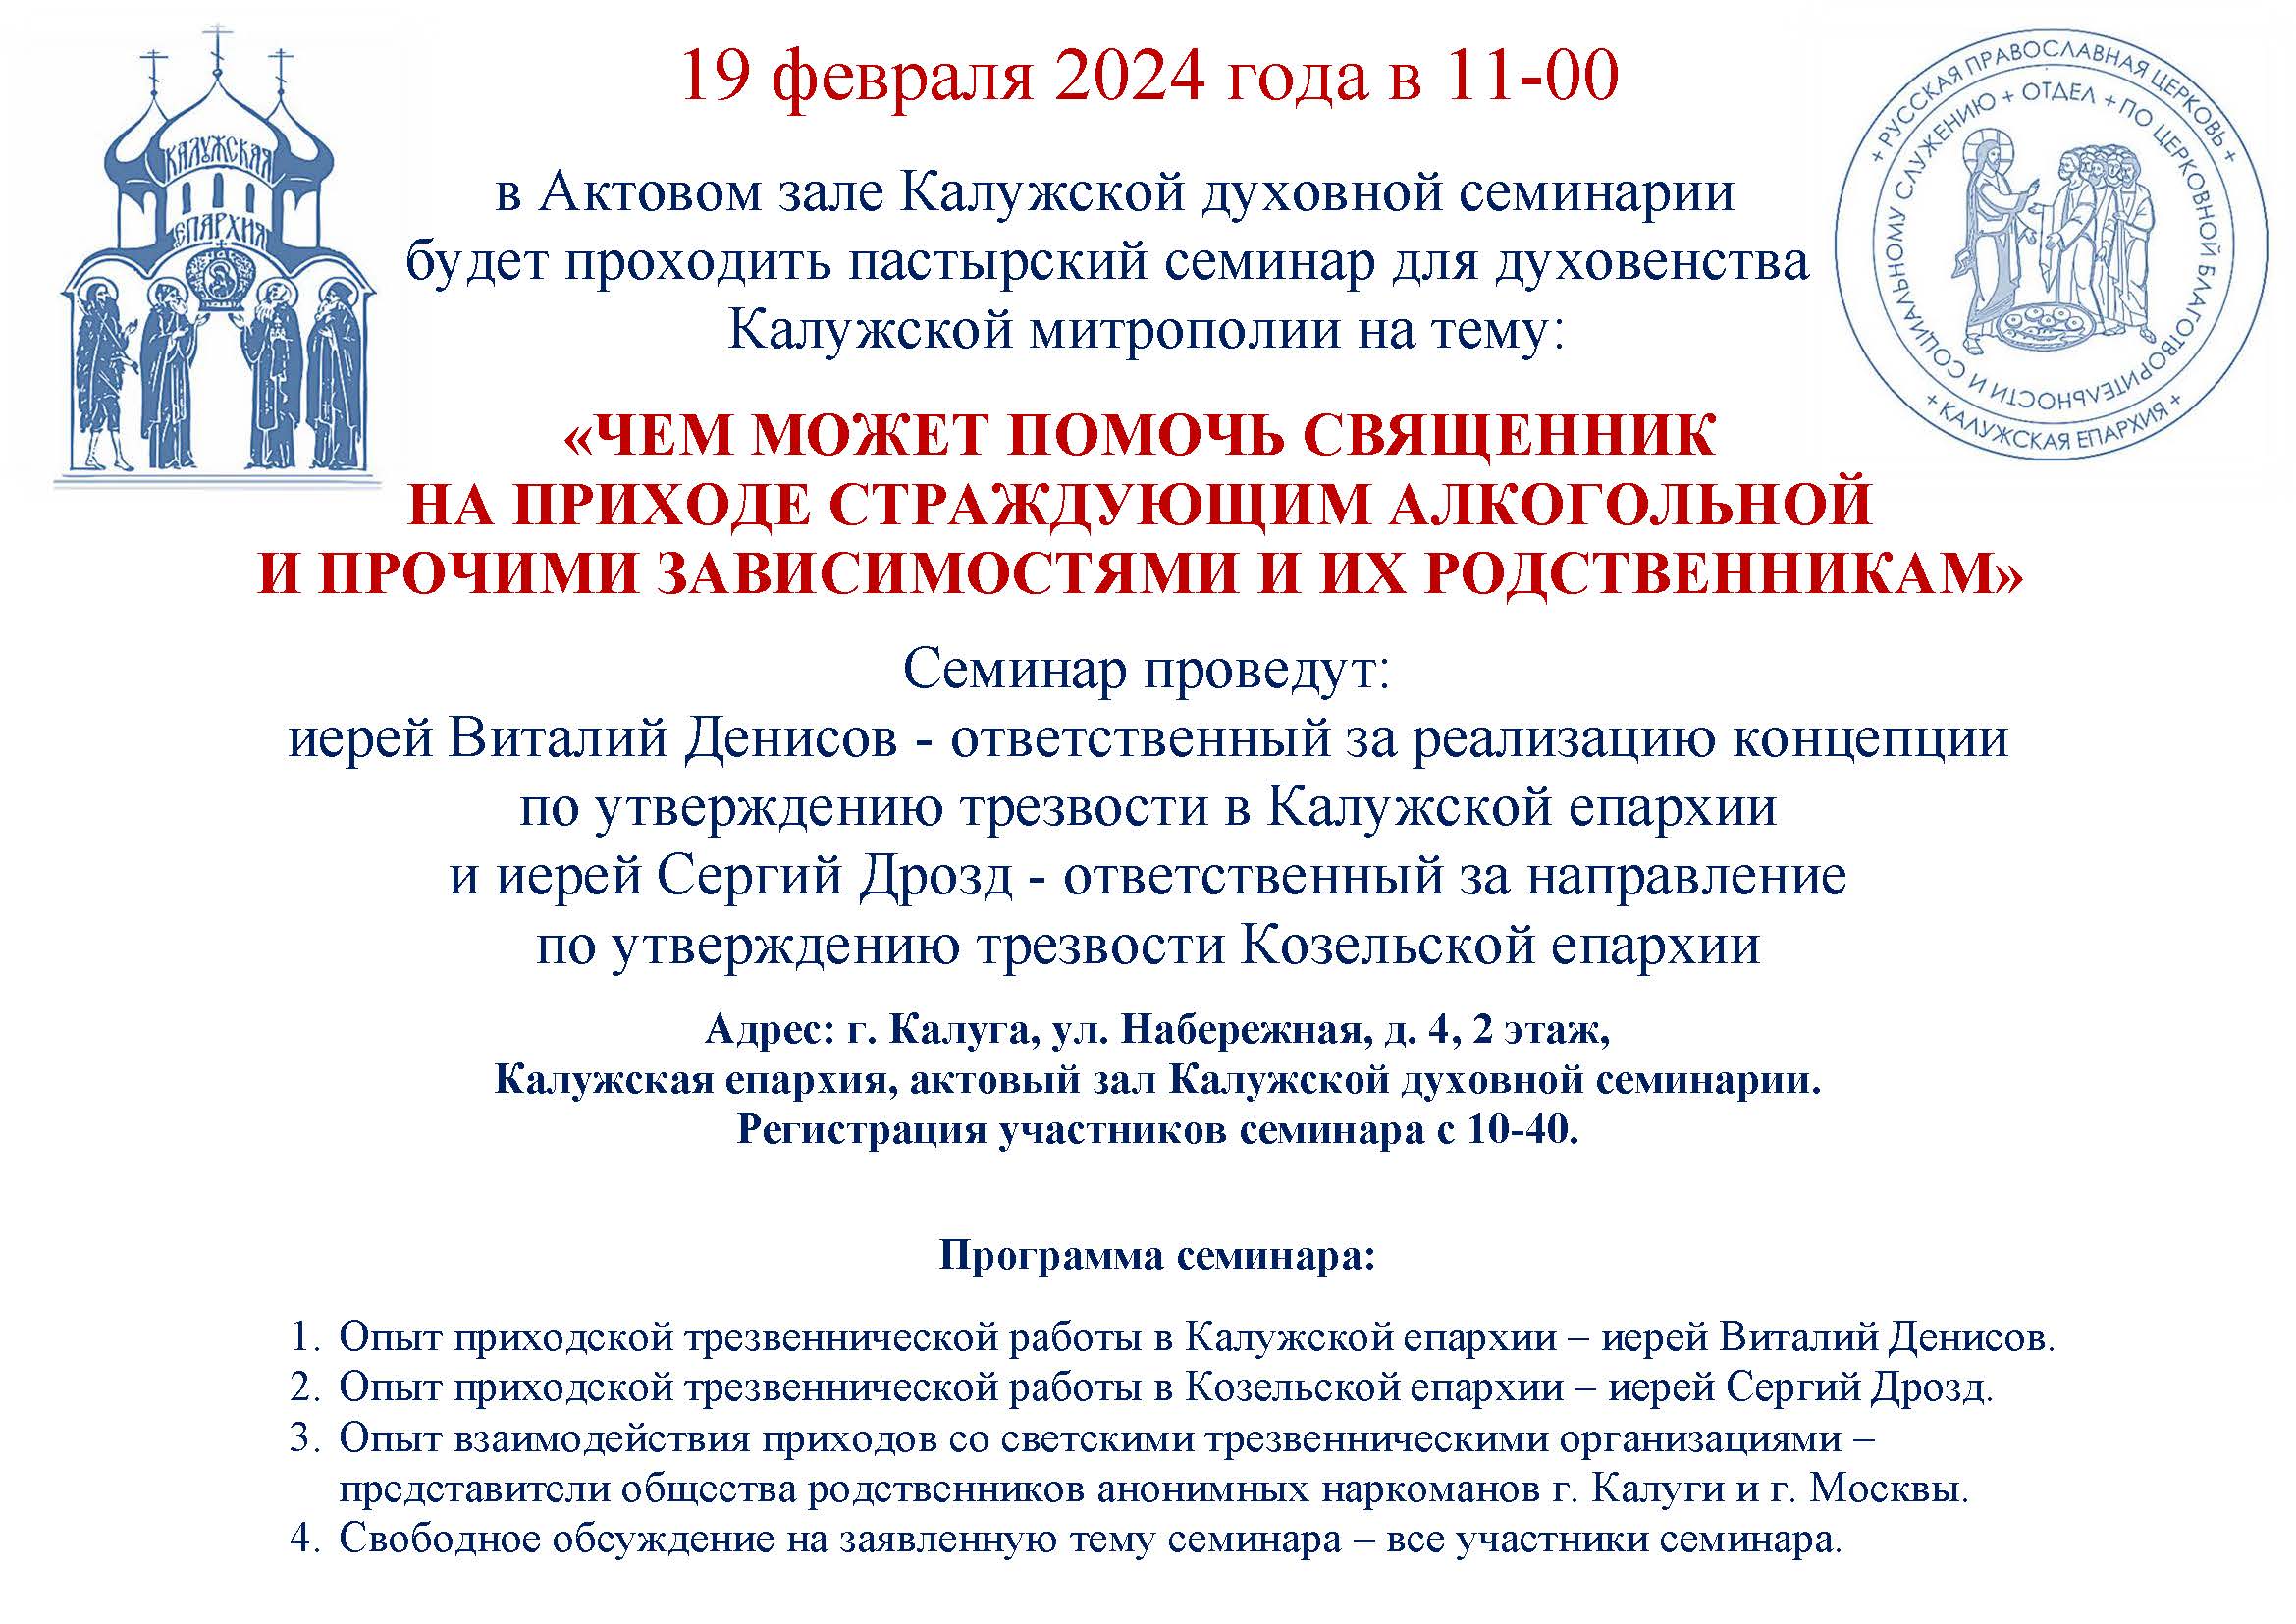 19 февраля 2024 года в 11-00 в Актовом зале Калужской духовной семинарии будет проходить пастырский семинар